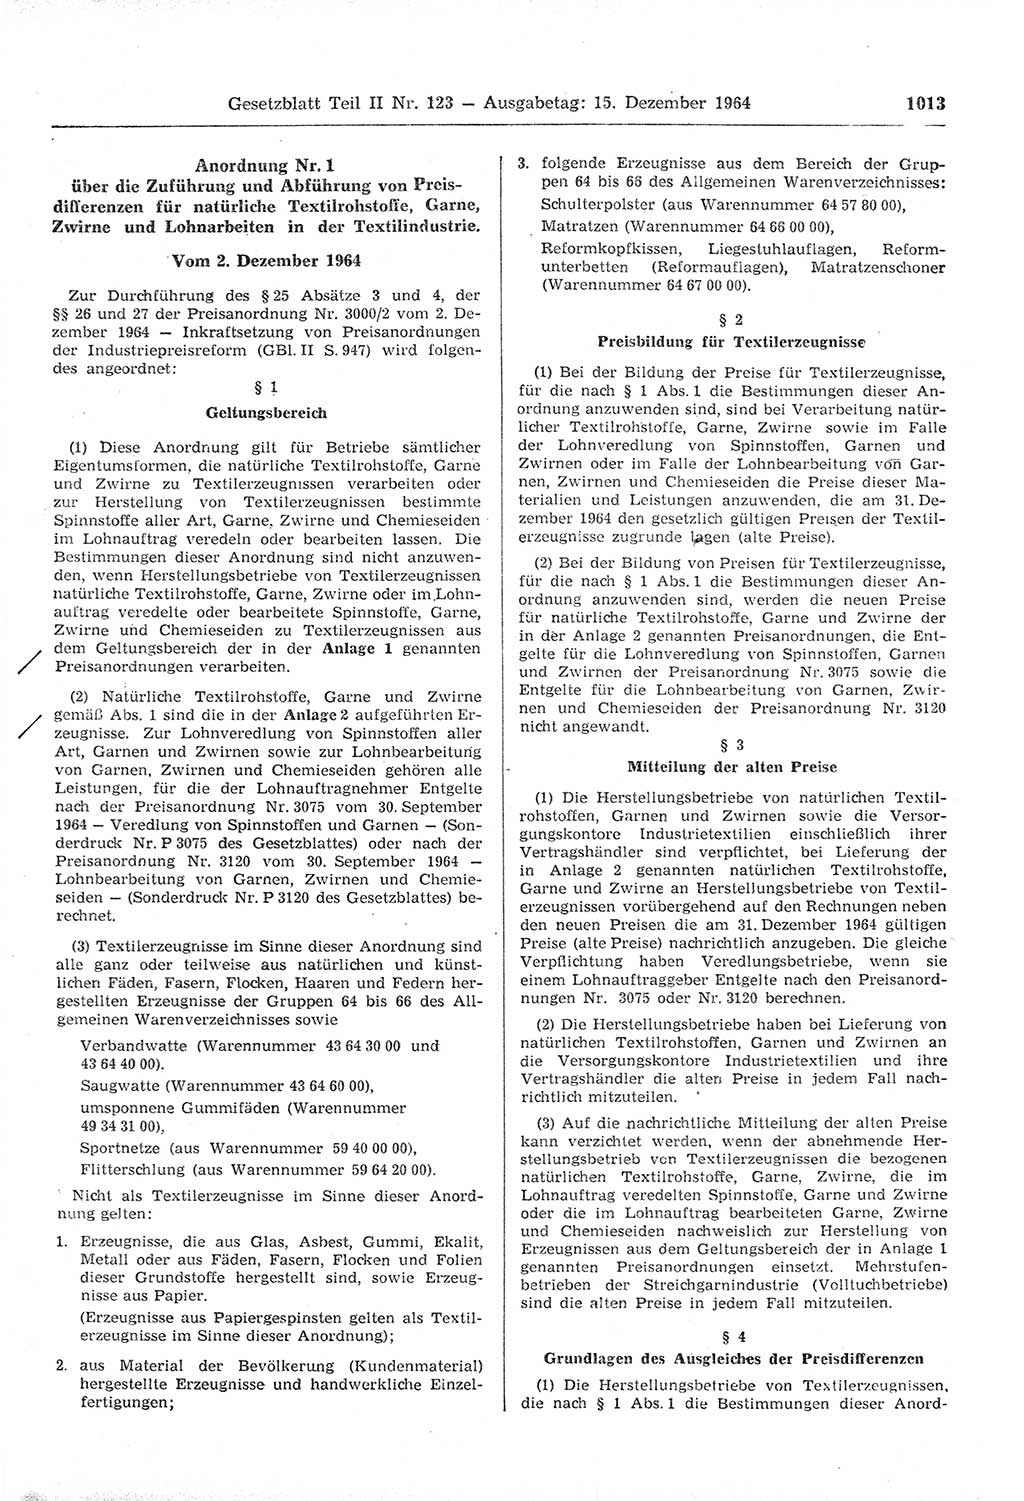 Gesetzblatt (GBl.) der Deutschen Demokratischen Republik (DDR) Teil ⅠⅠ 1964, Seite 1013 (GBl. DDR ⅠⅠ 1964, S. 1013)